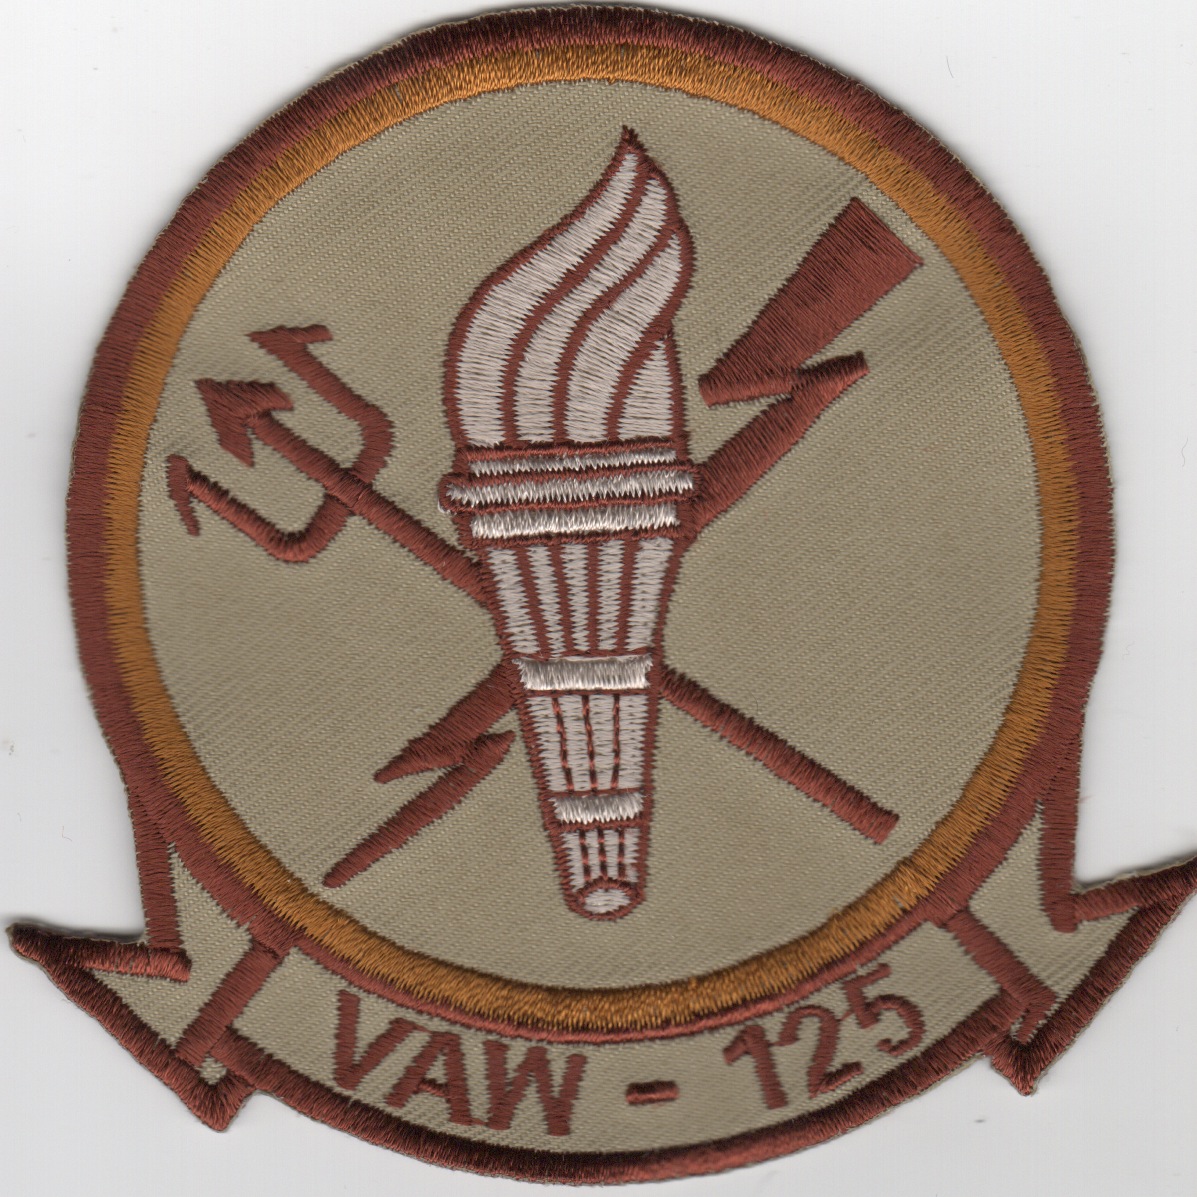 VAW-125 Squadron Patch (Des)